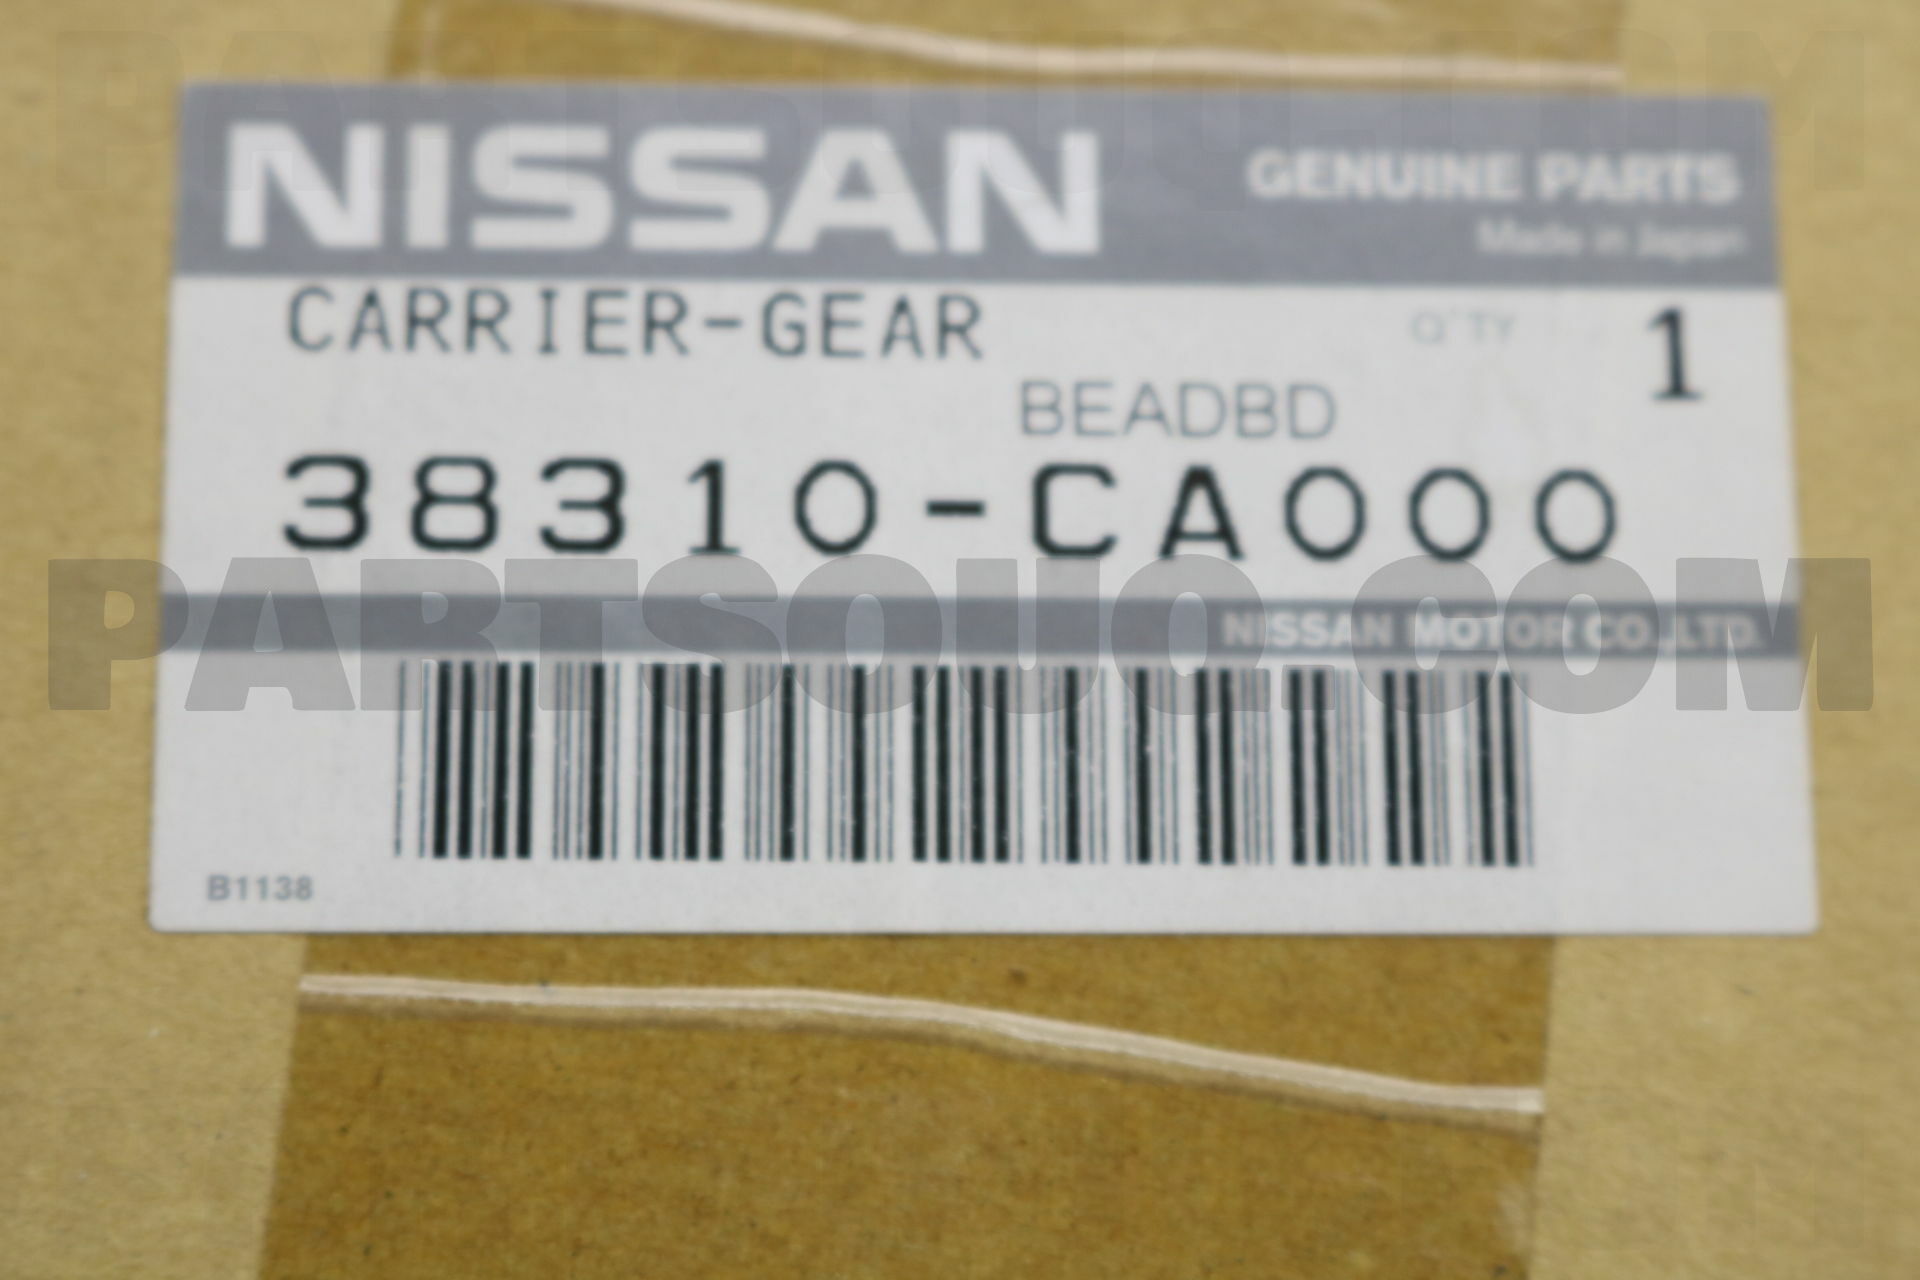 CARRIER COMPL-GEAR 38310CA000 | Nissan Parts | PartSouq